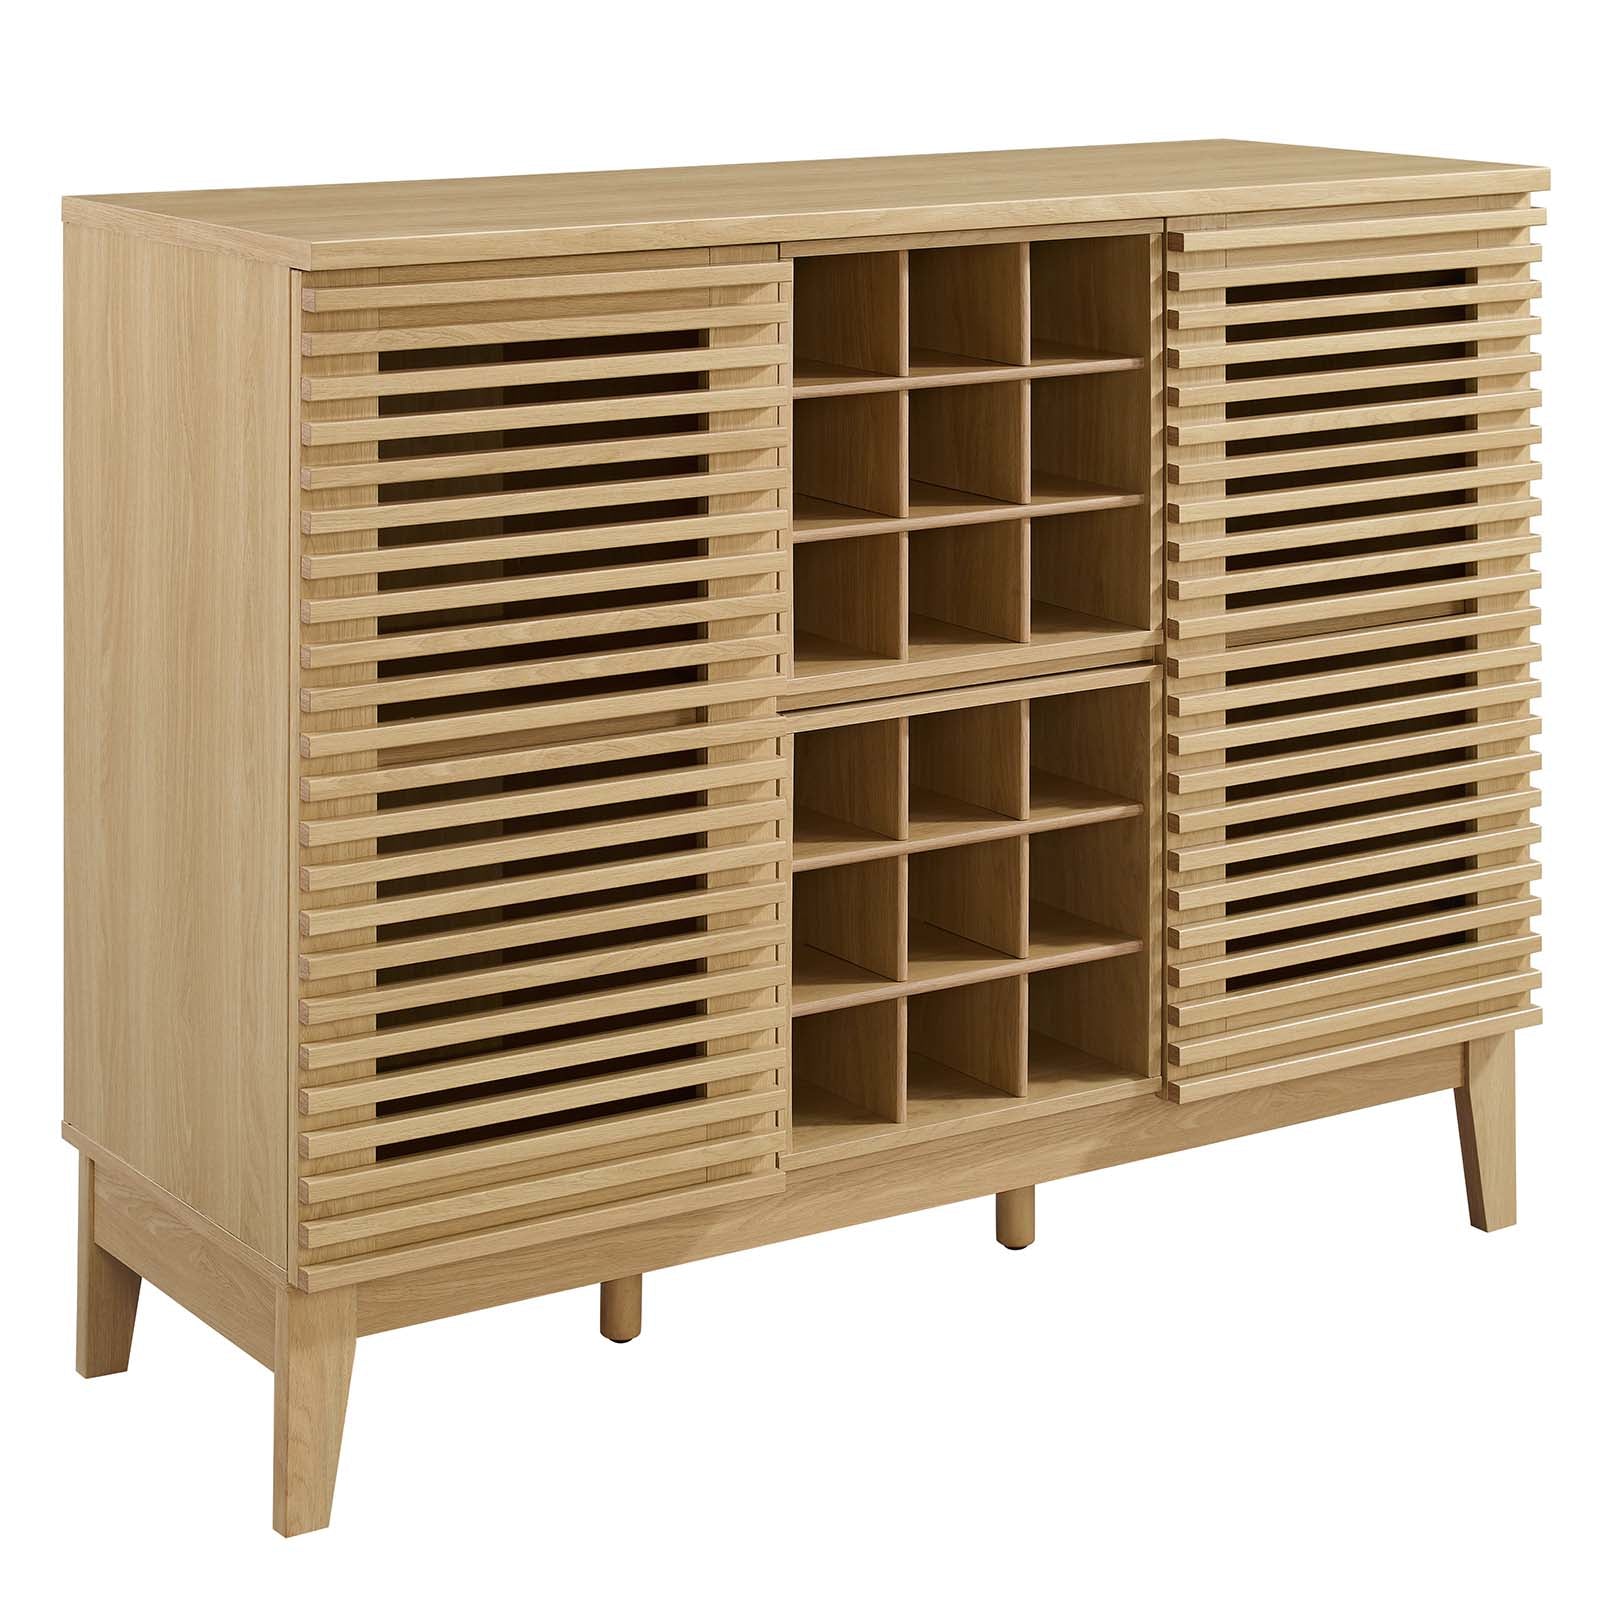 Modway Buffets & Cabinets - Render Bar Cabinet Oak